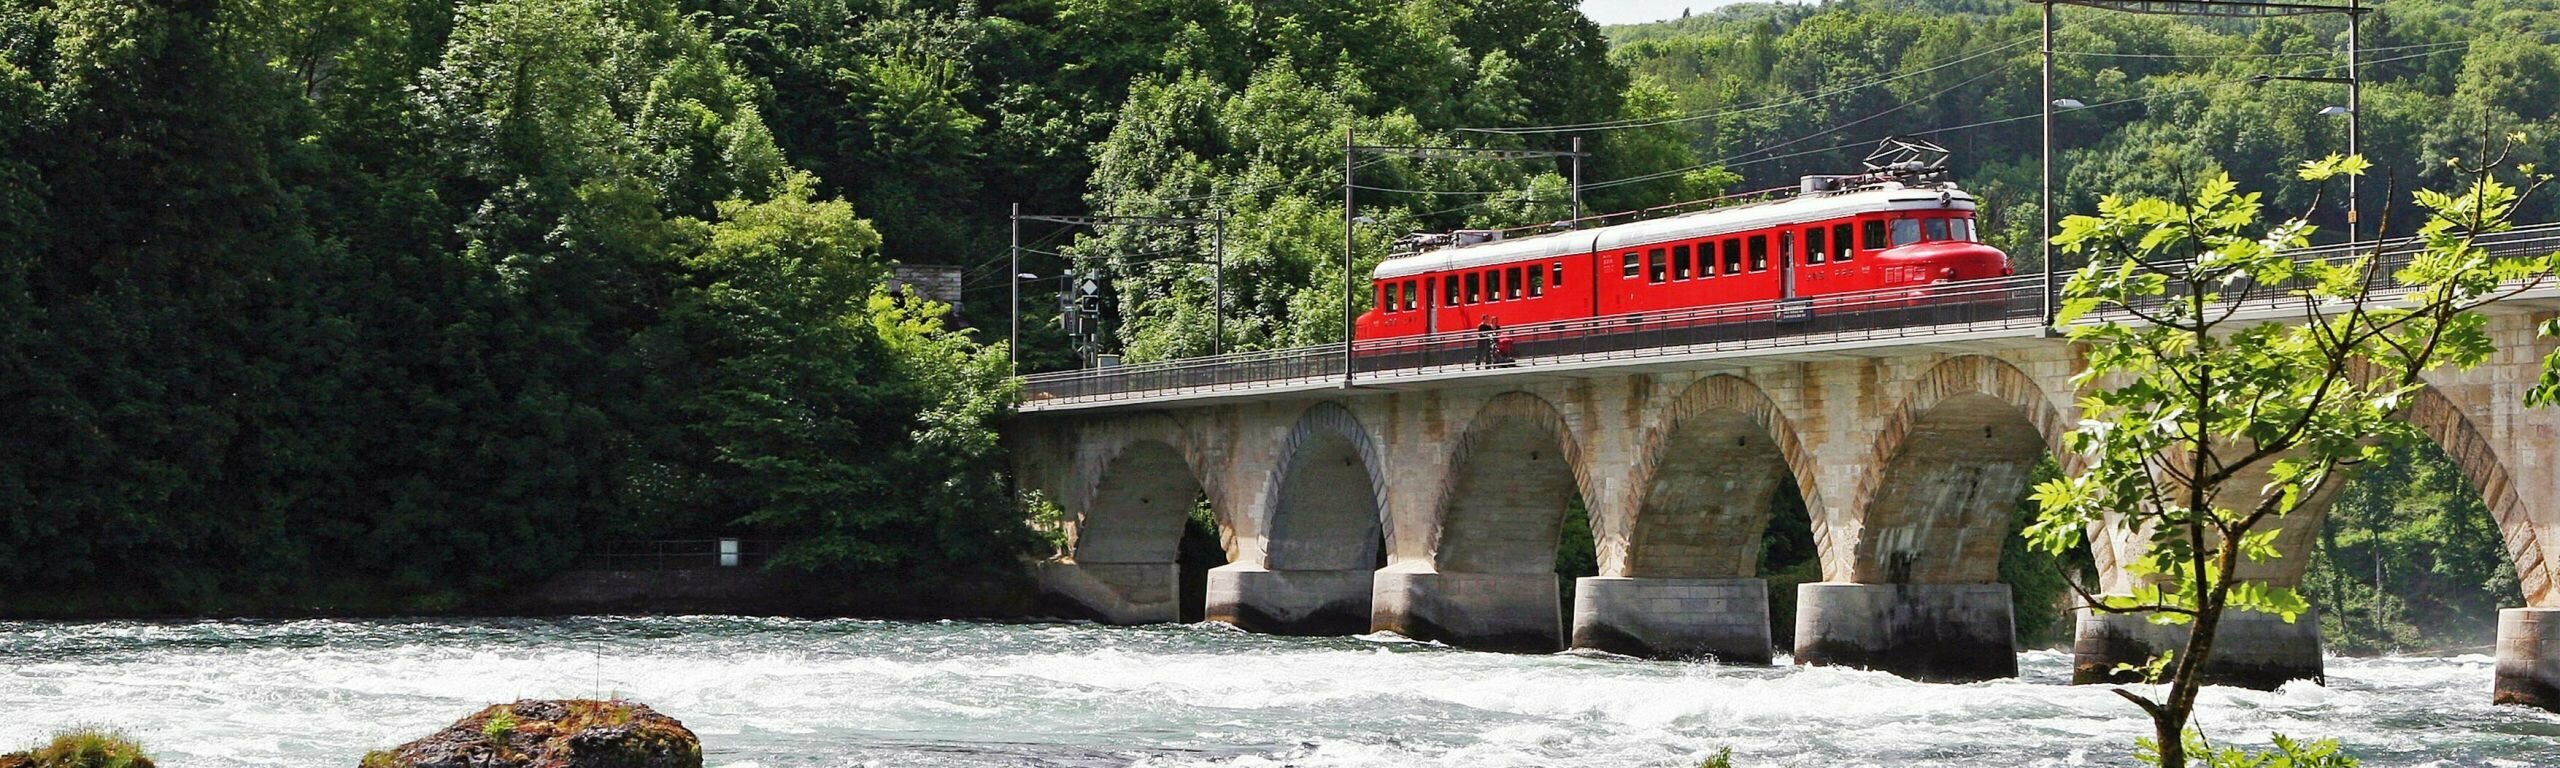 La Flèche rouge double «Churchill» sur le pont chutes du Rhin